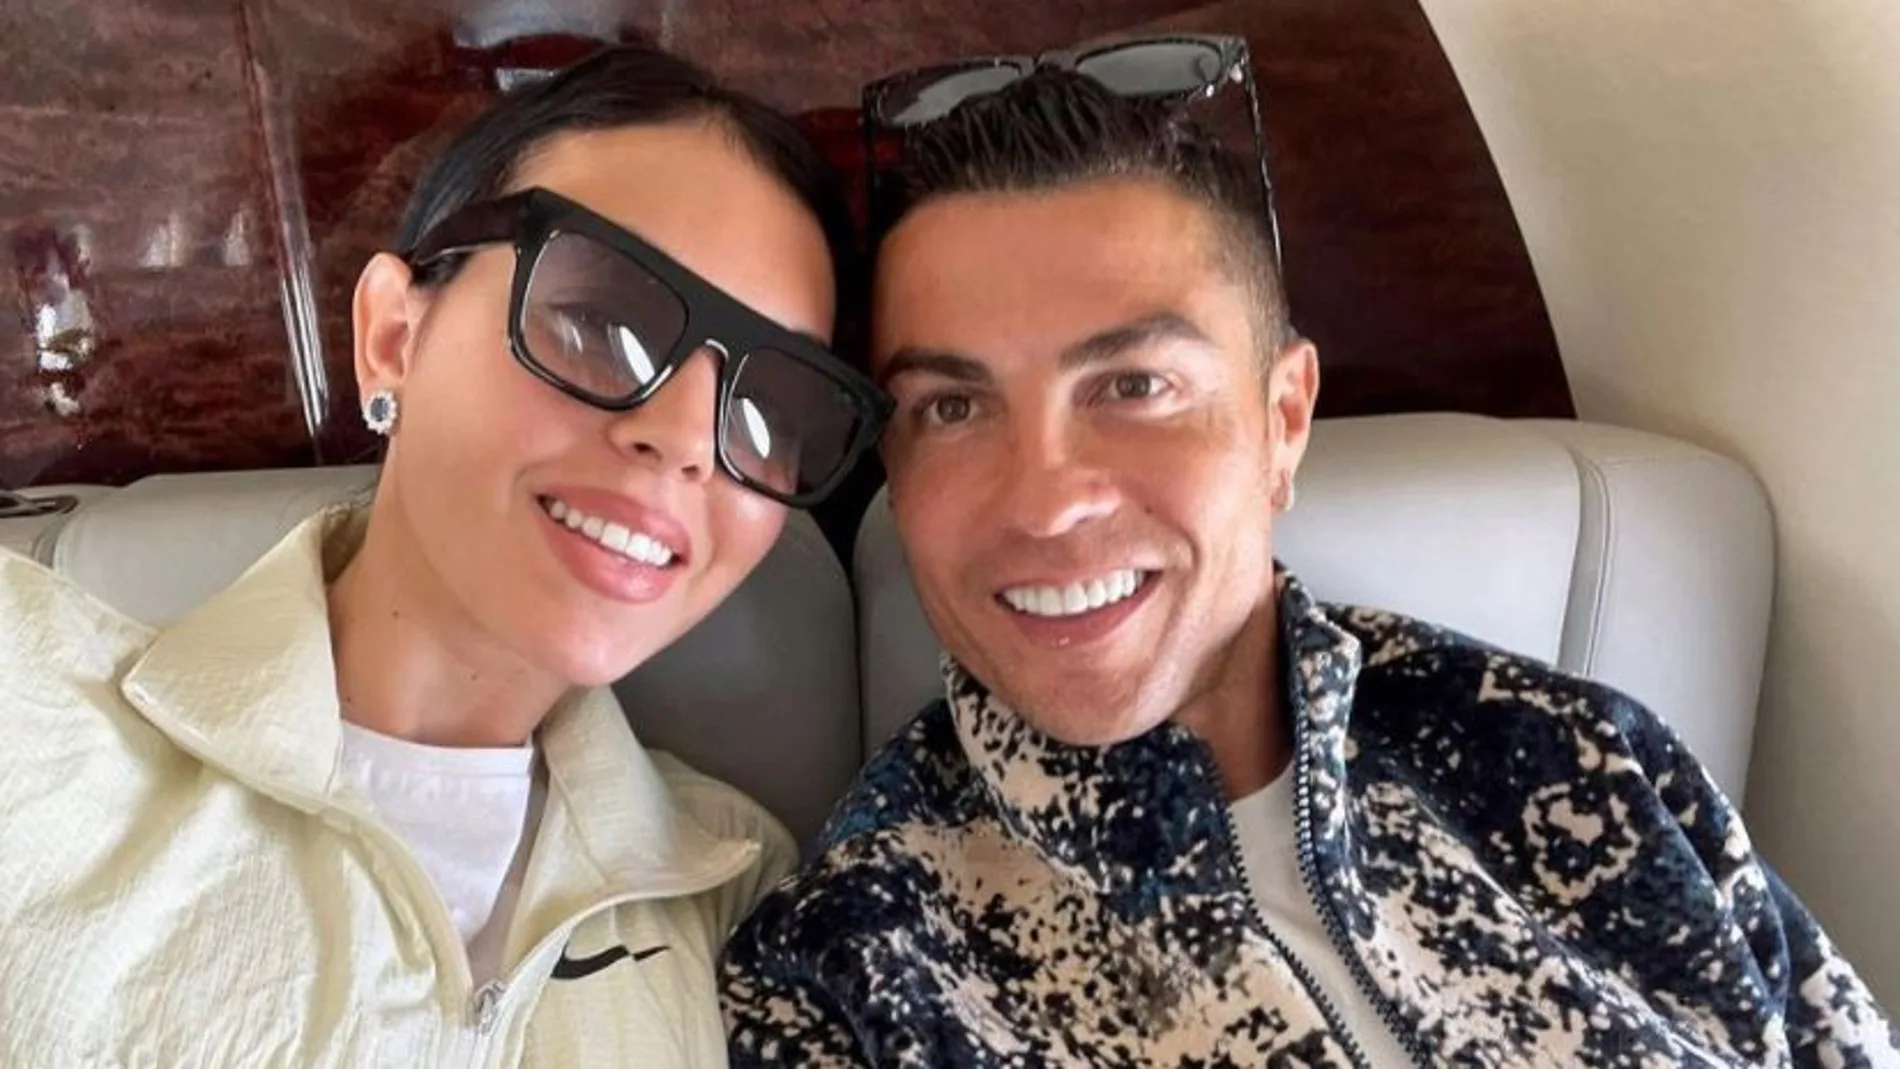 Georgina Rodríguez y Cristiano Ronaldo, en una imagen de su perfil